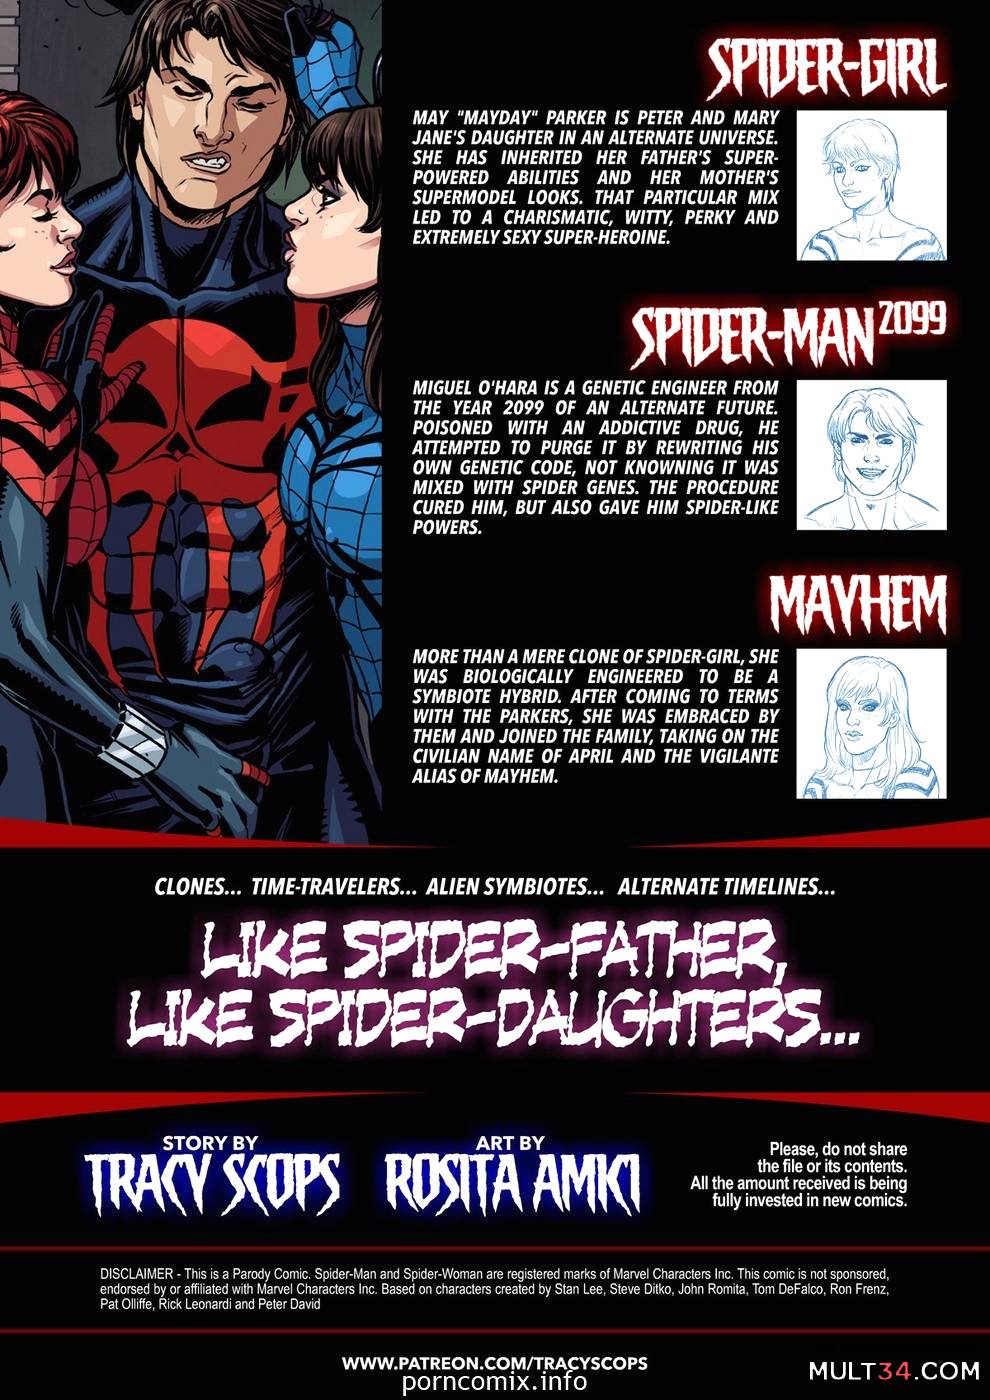 Spider-Girl Spider-Man 2099 page 2